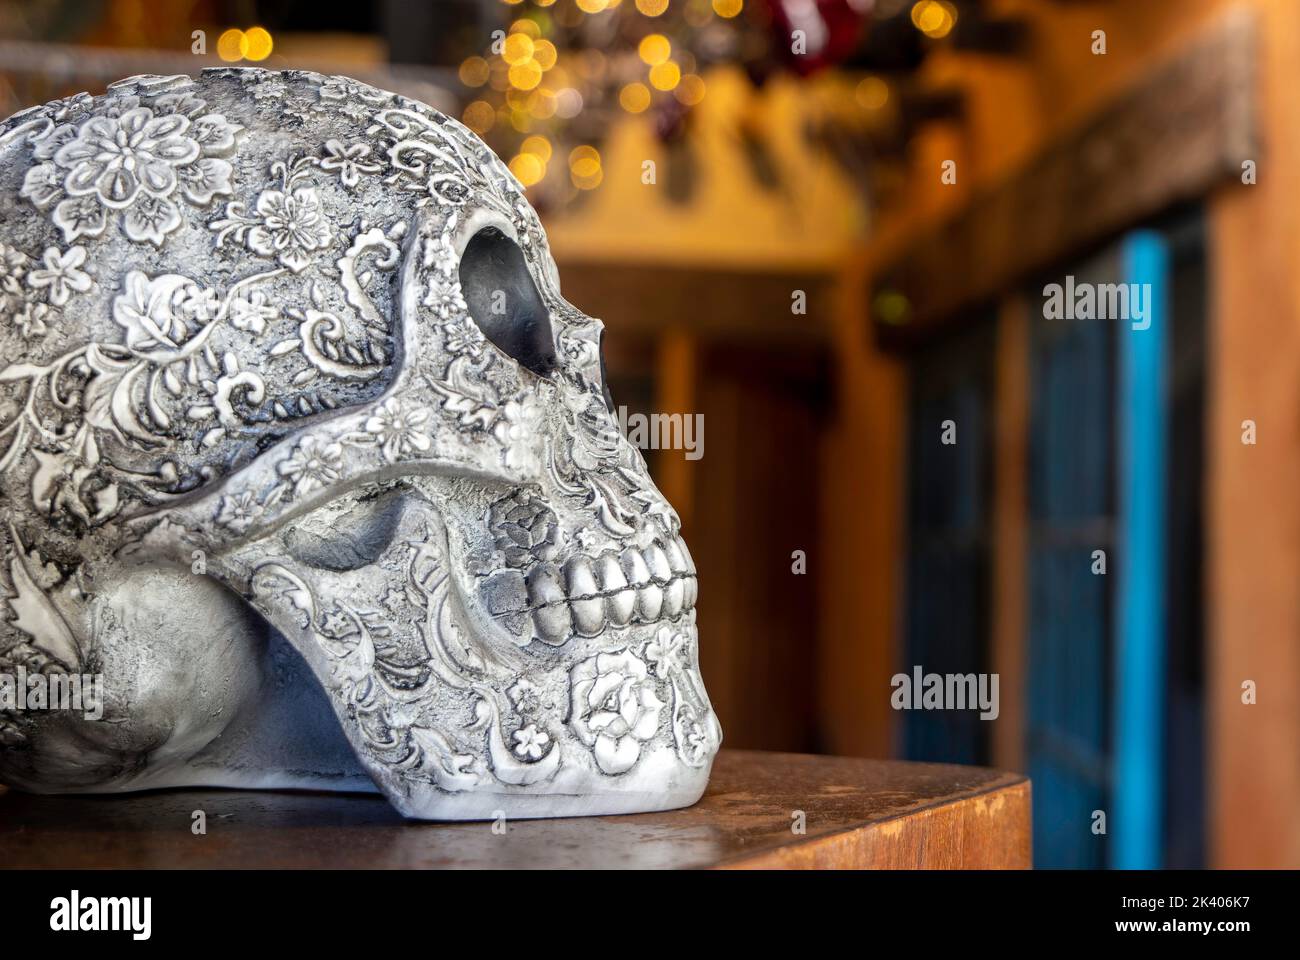 Céramique mexicaine jour des morts (Dia de los Muertos) crâne. Vue latérale Banque D'Images